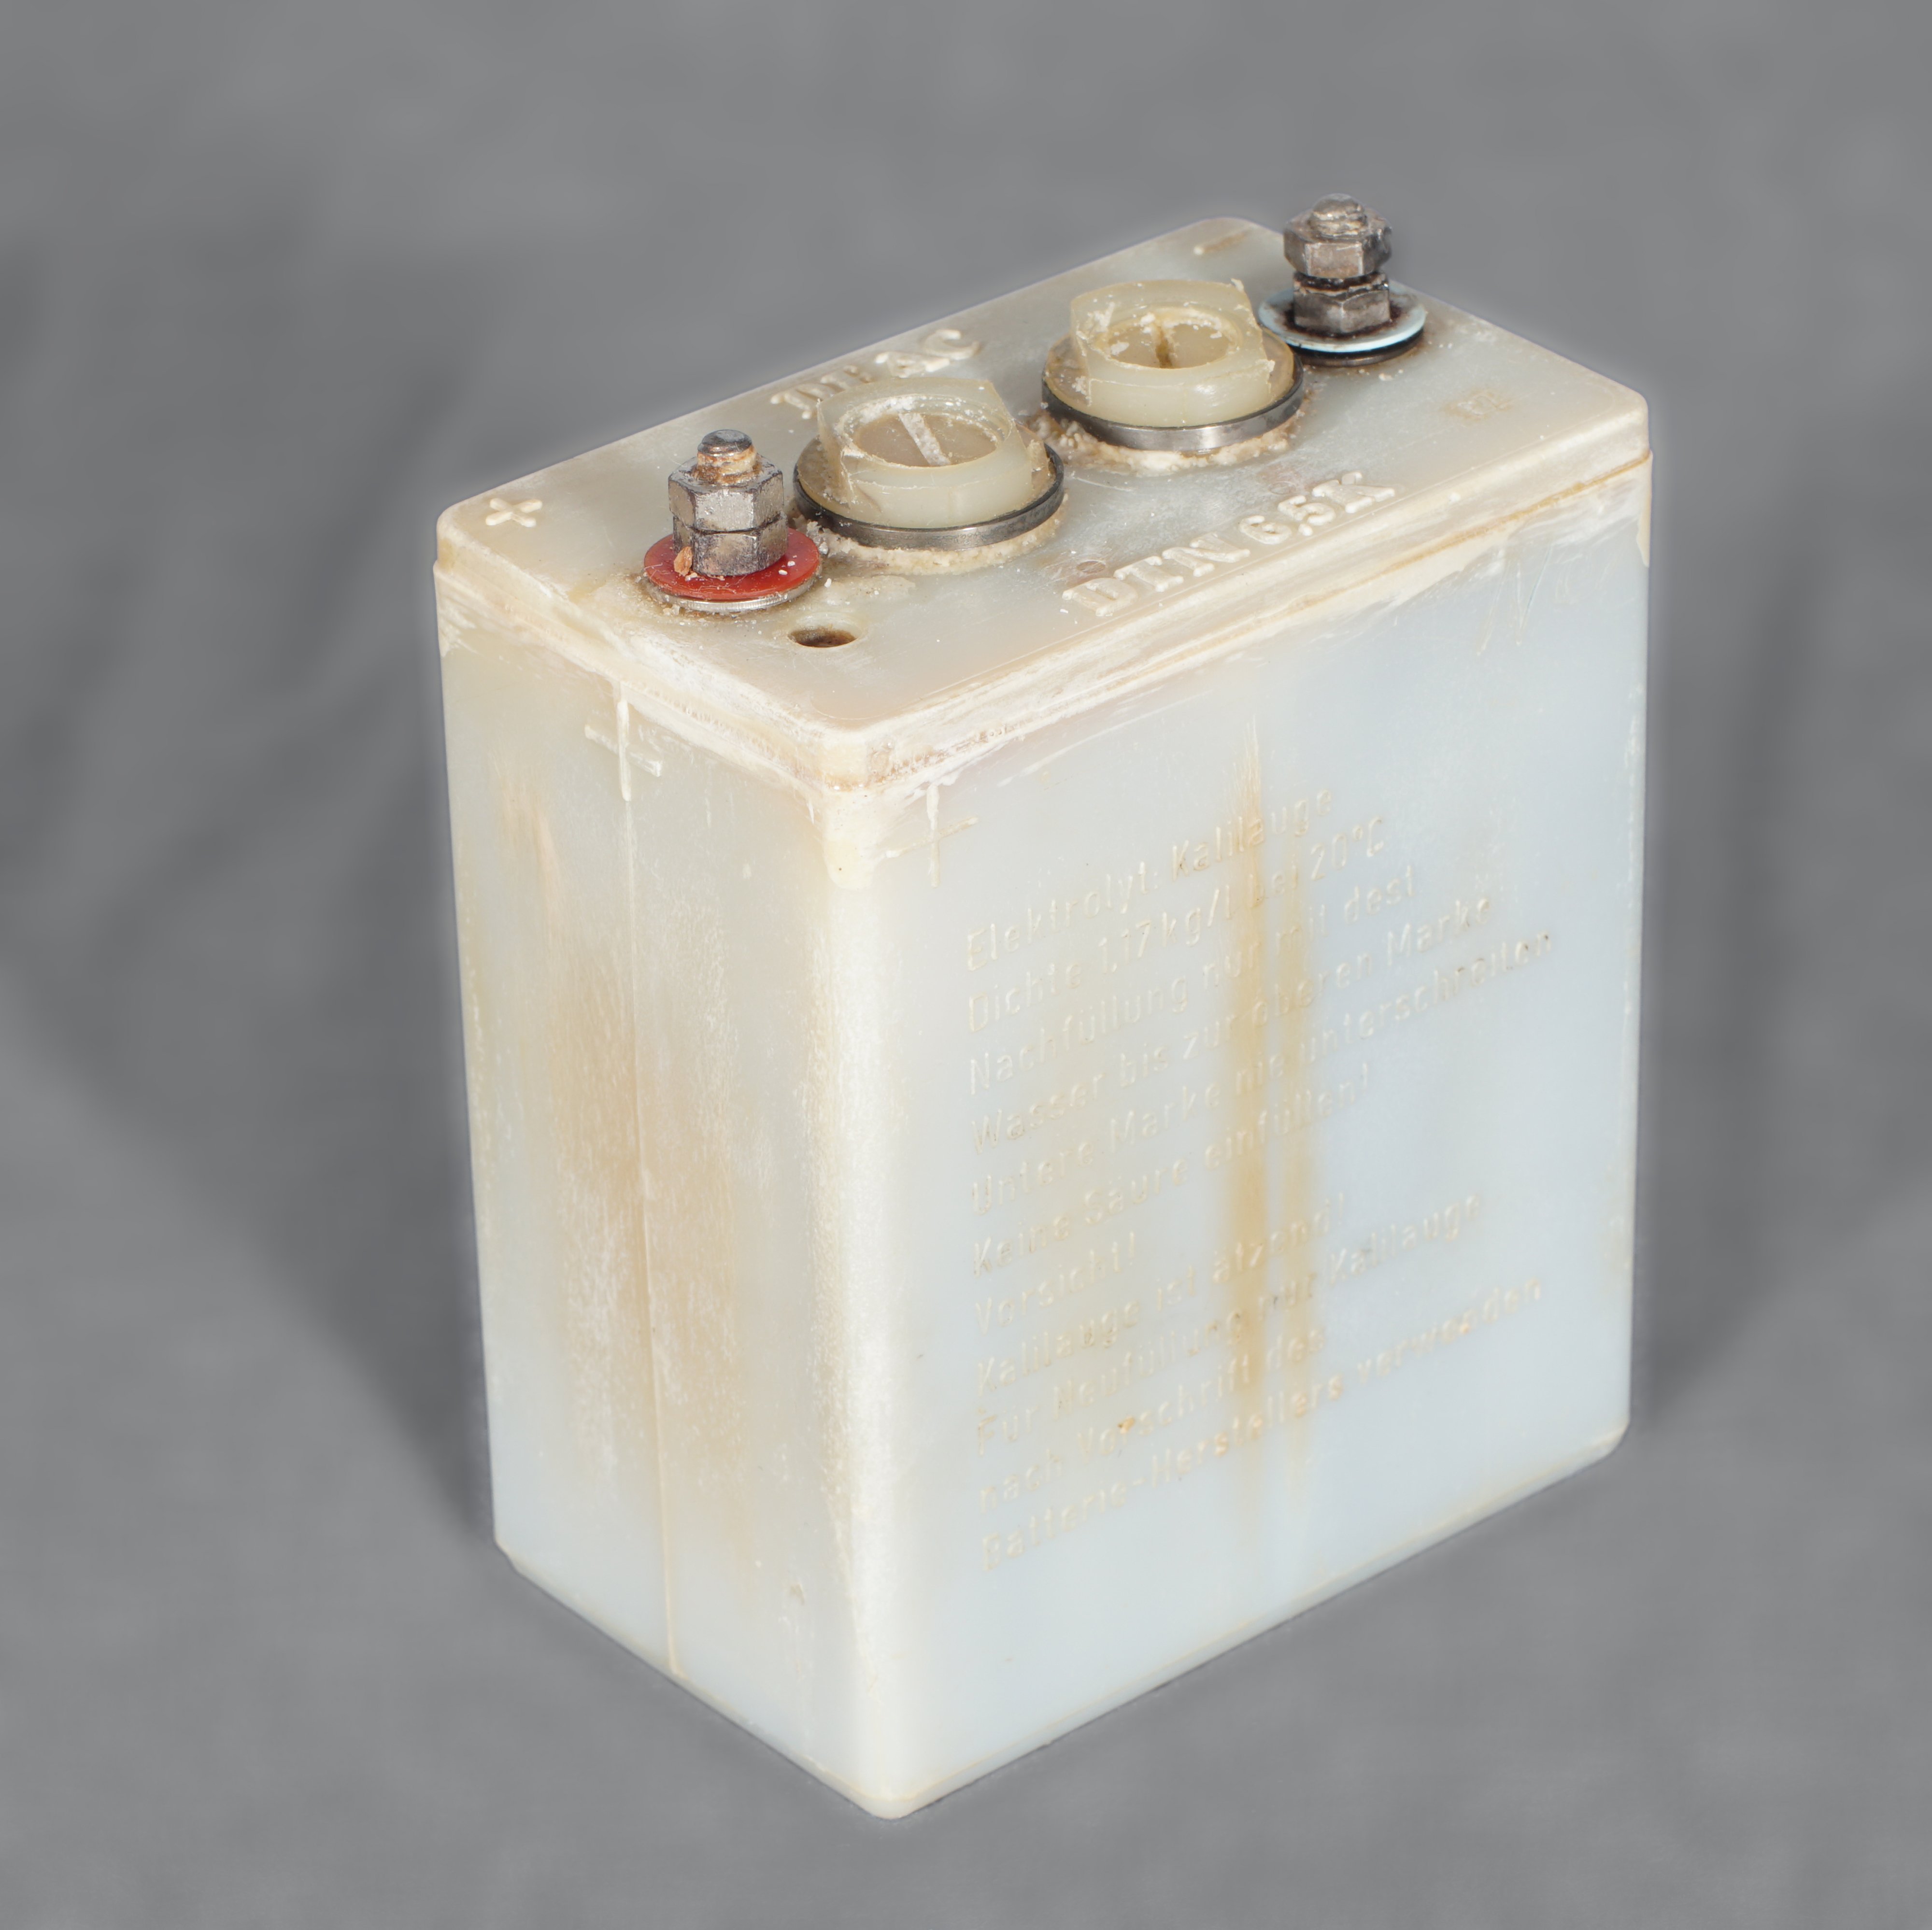 Akkumulator für elektrische Grubenlampe (Werra-Kalibergbau-Museum, Heringen/W. CC BY-NC-SA)